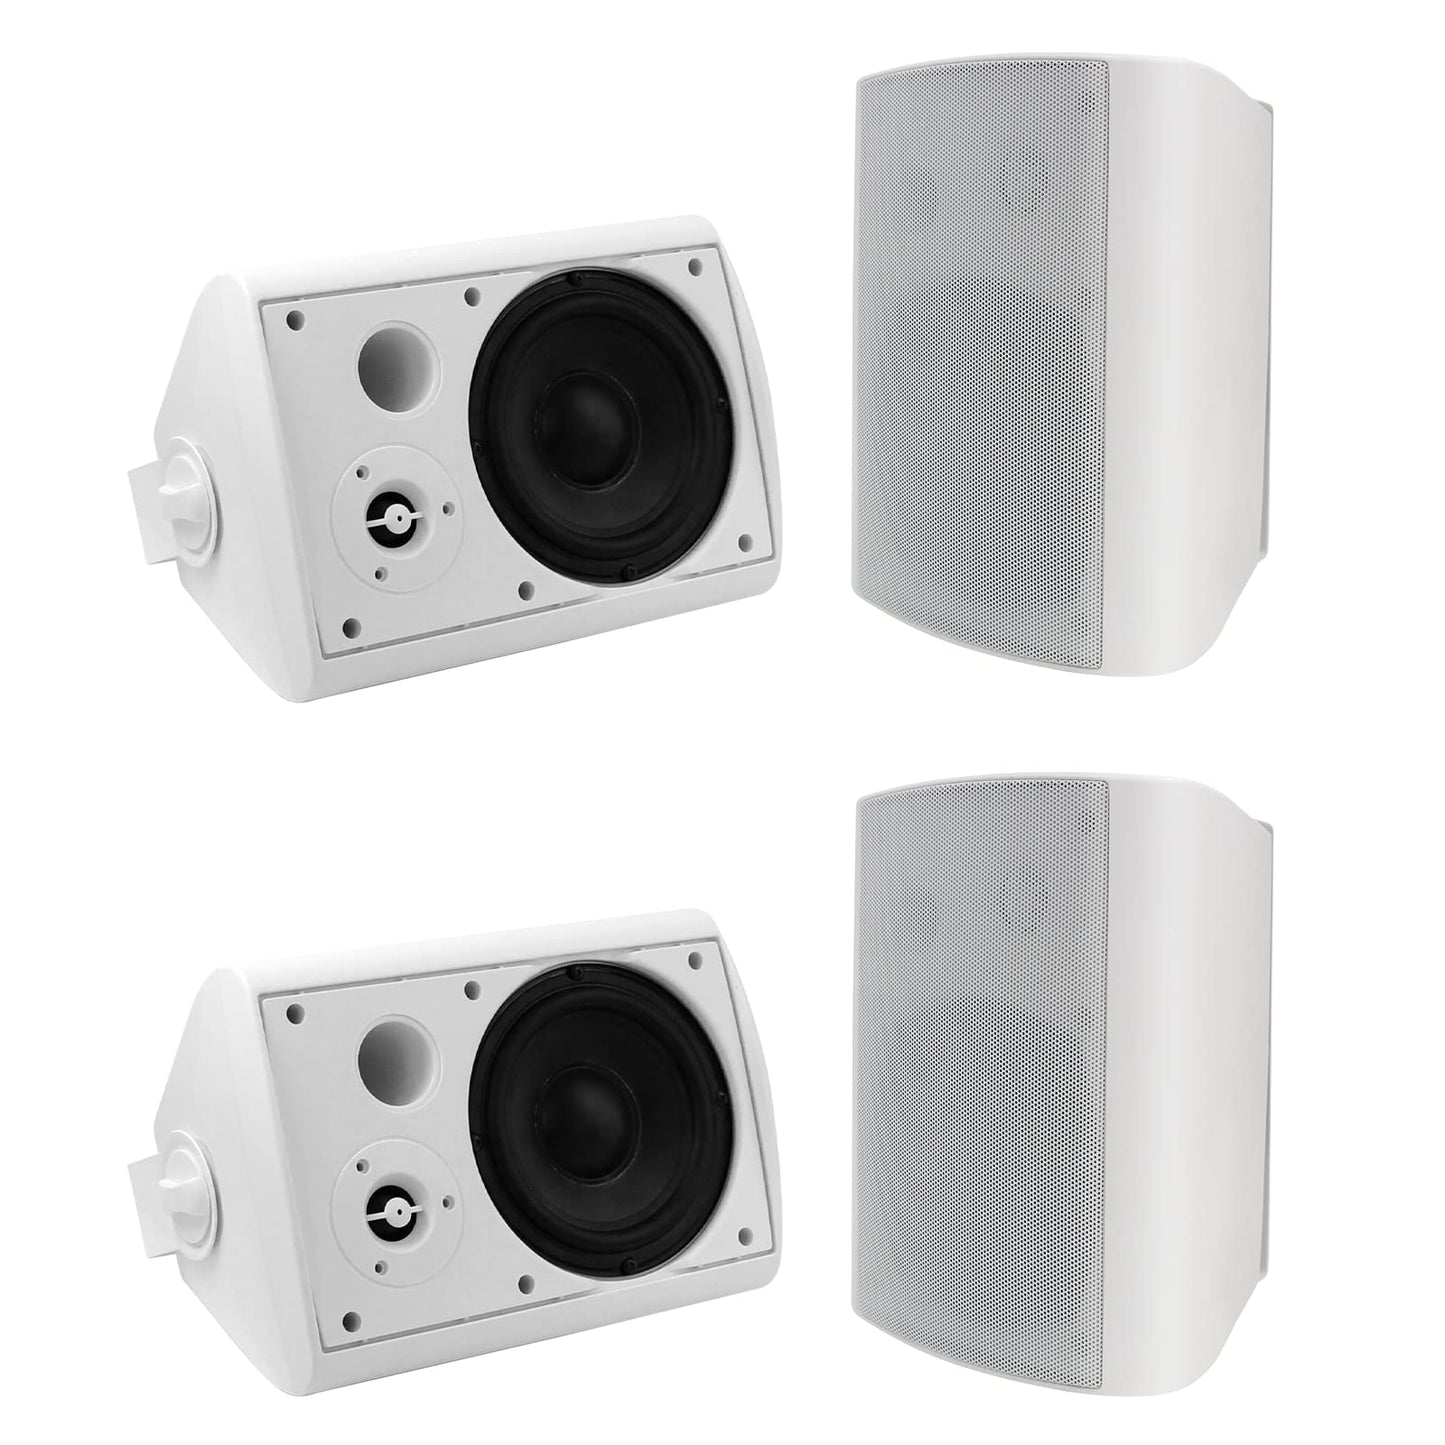 Herdio wall-mounted Bluetooth speaker 5.25" 600W two-channel HOS-501BTX2